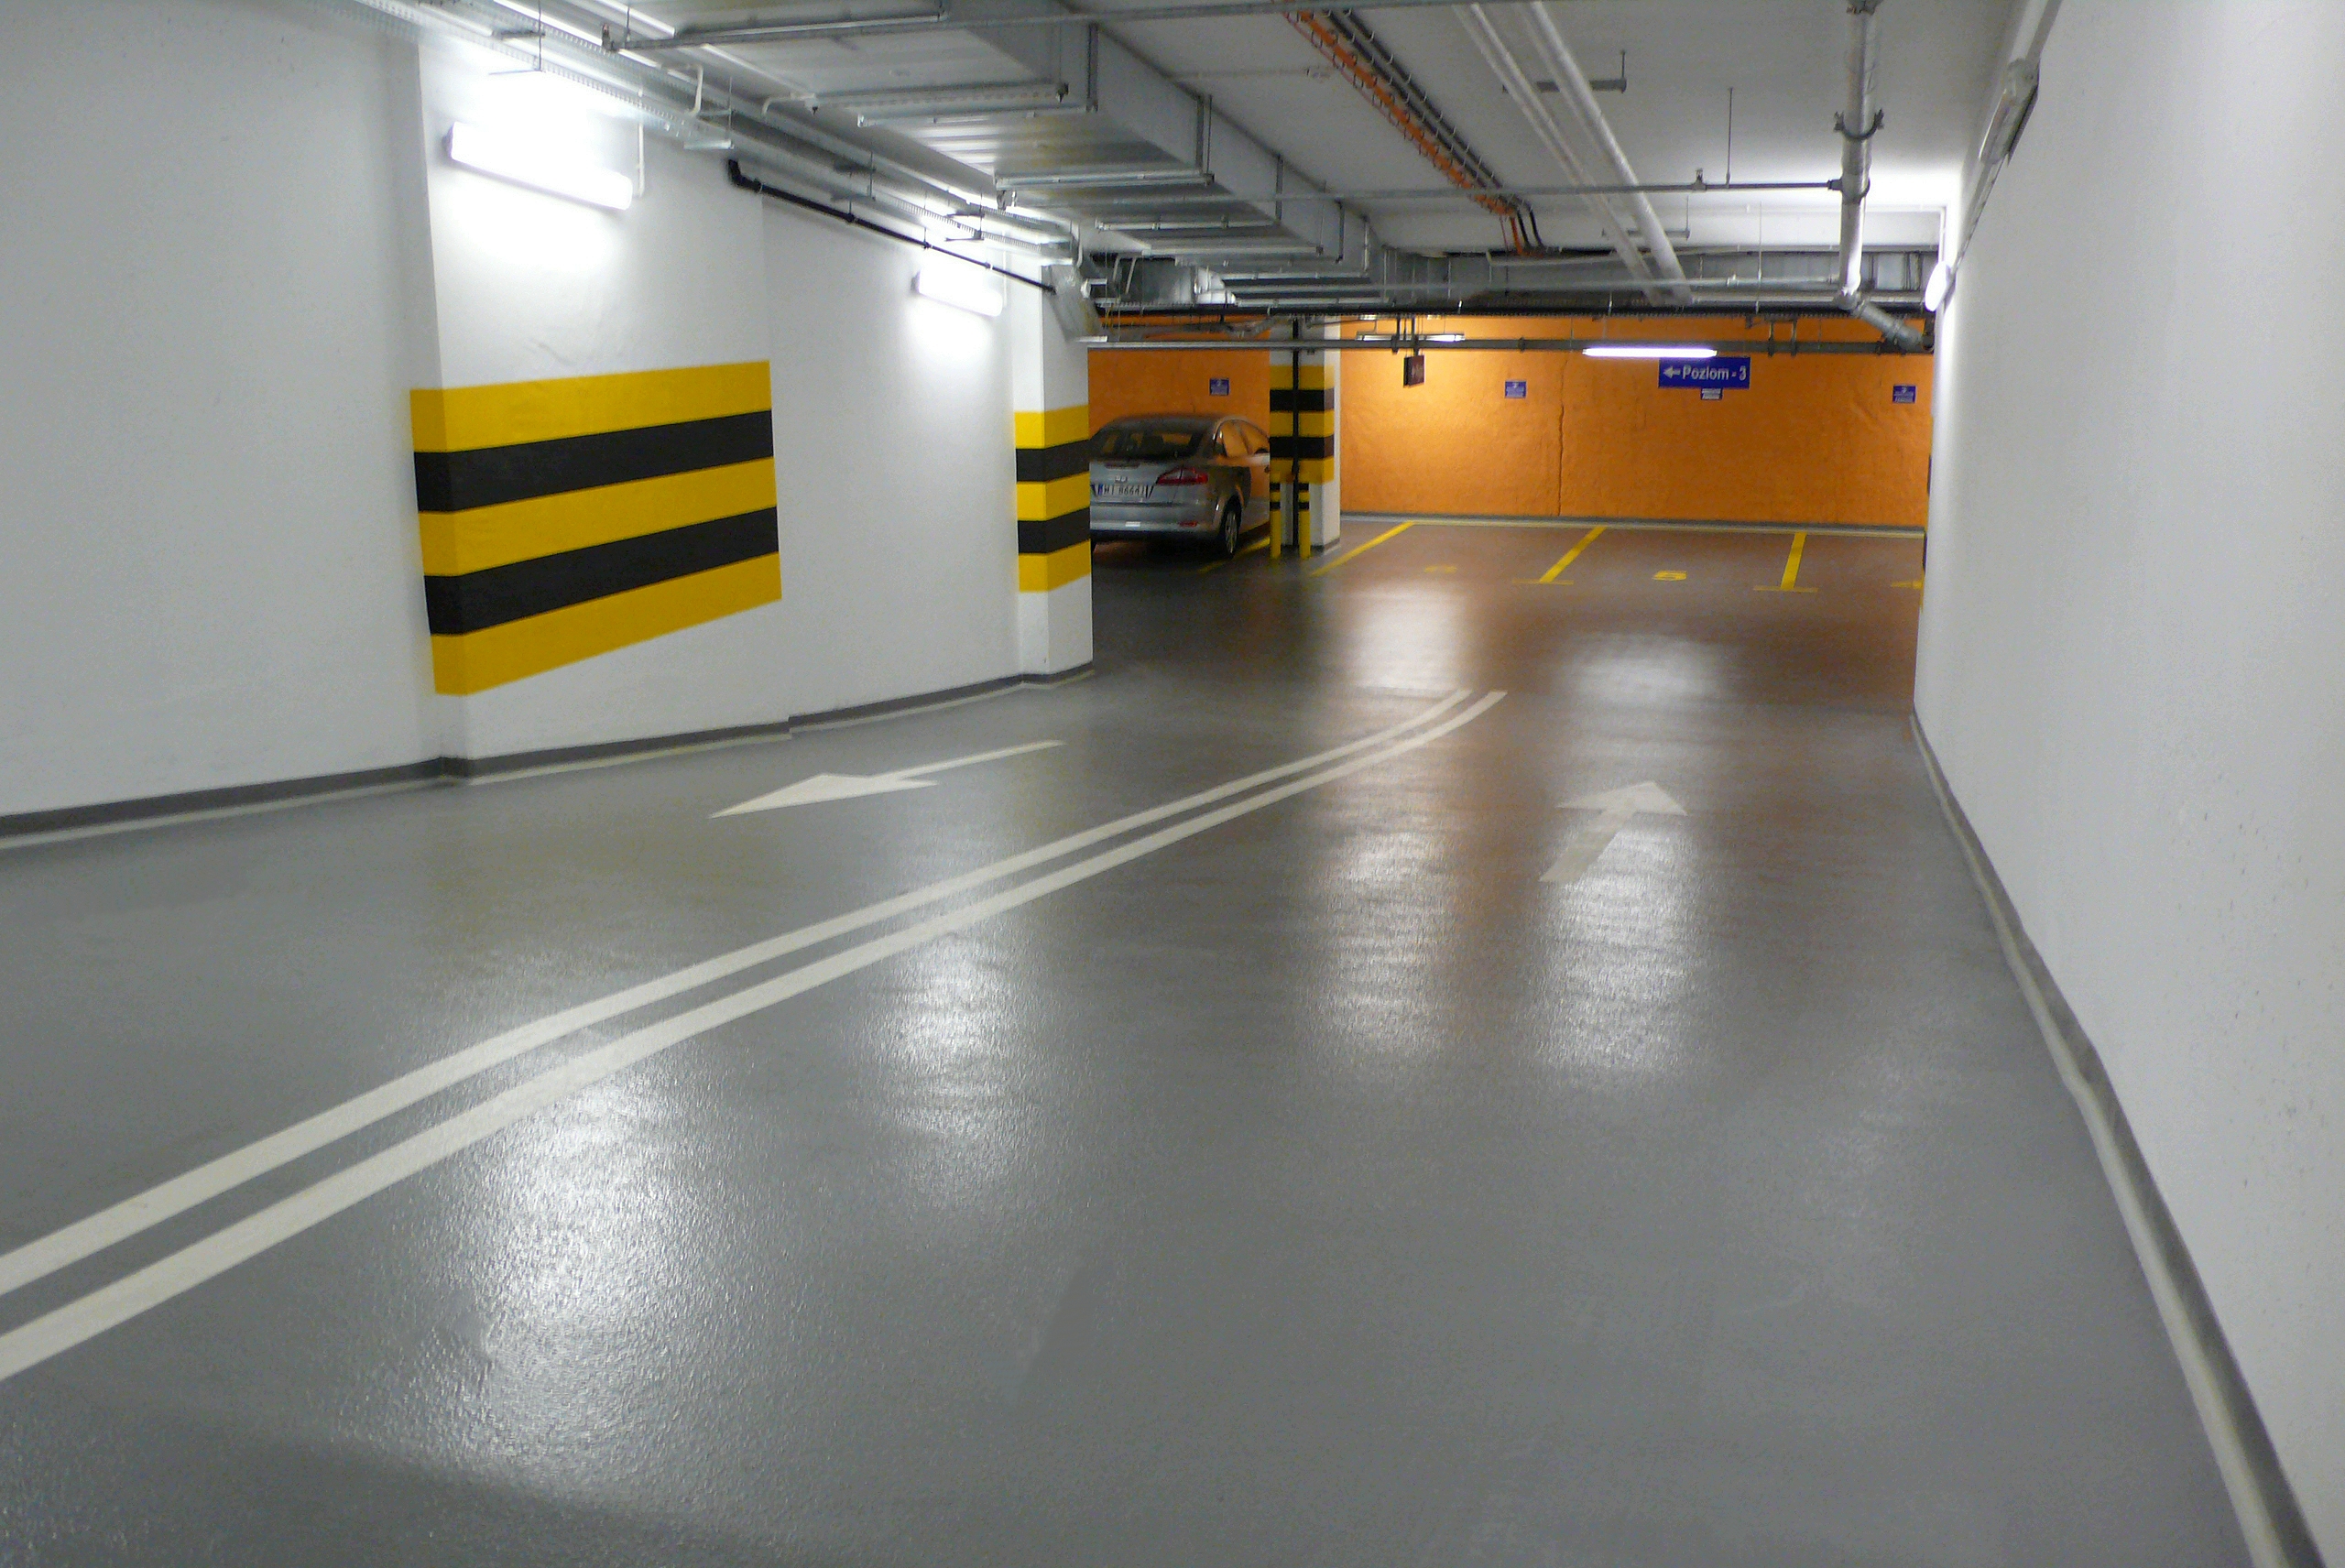 Способы повышения безопасности на паркинге благодаря покрытию  на полу